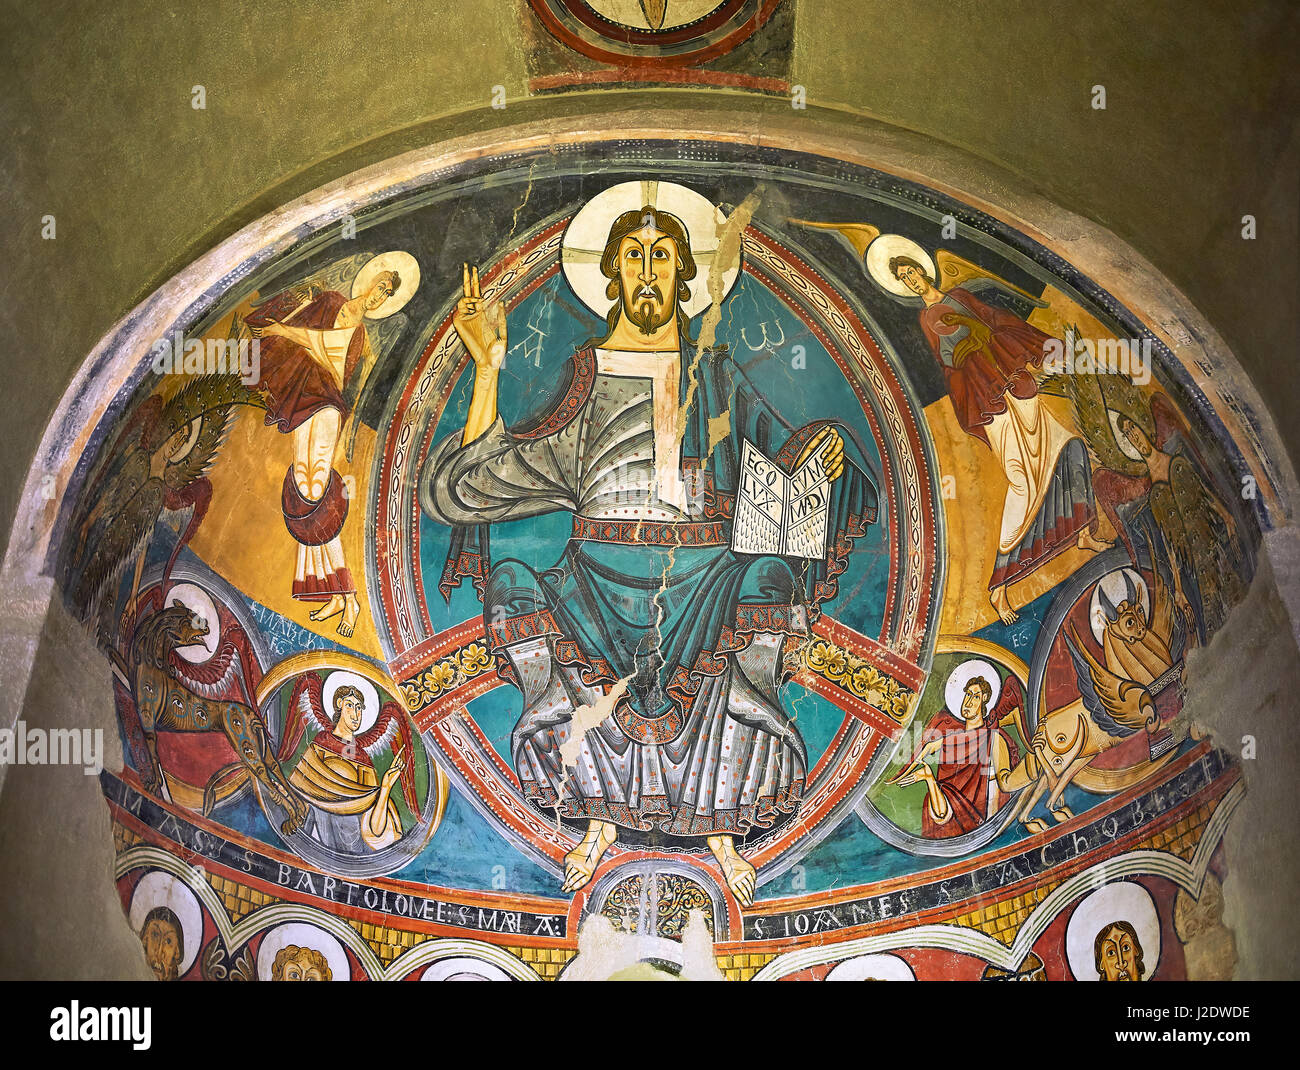 Romanische Fresken aus der Kirche von Sant Clement de Taull, Vall de Boi, Alta Ribagorca, Spanien. Gemalt um 1123 Darstellung Christus Pantokrator oder Stockfoto